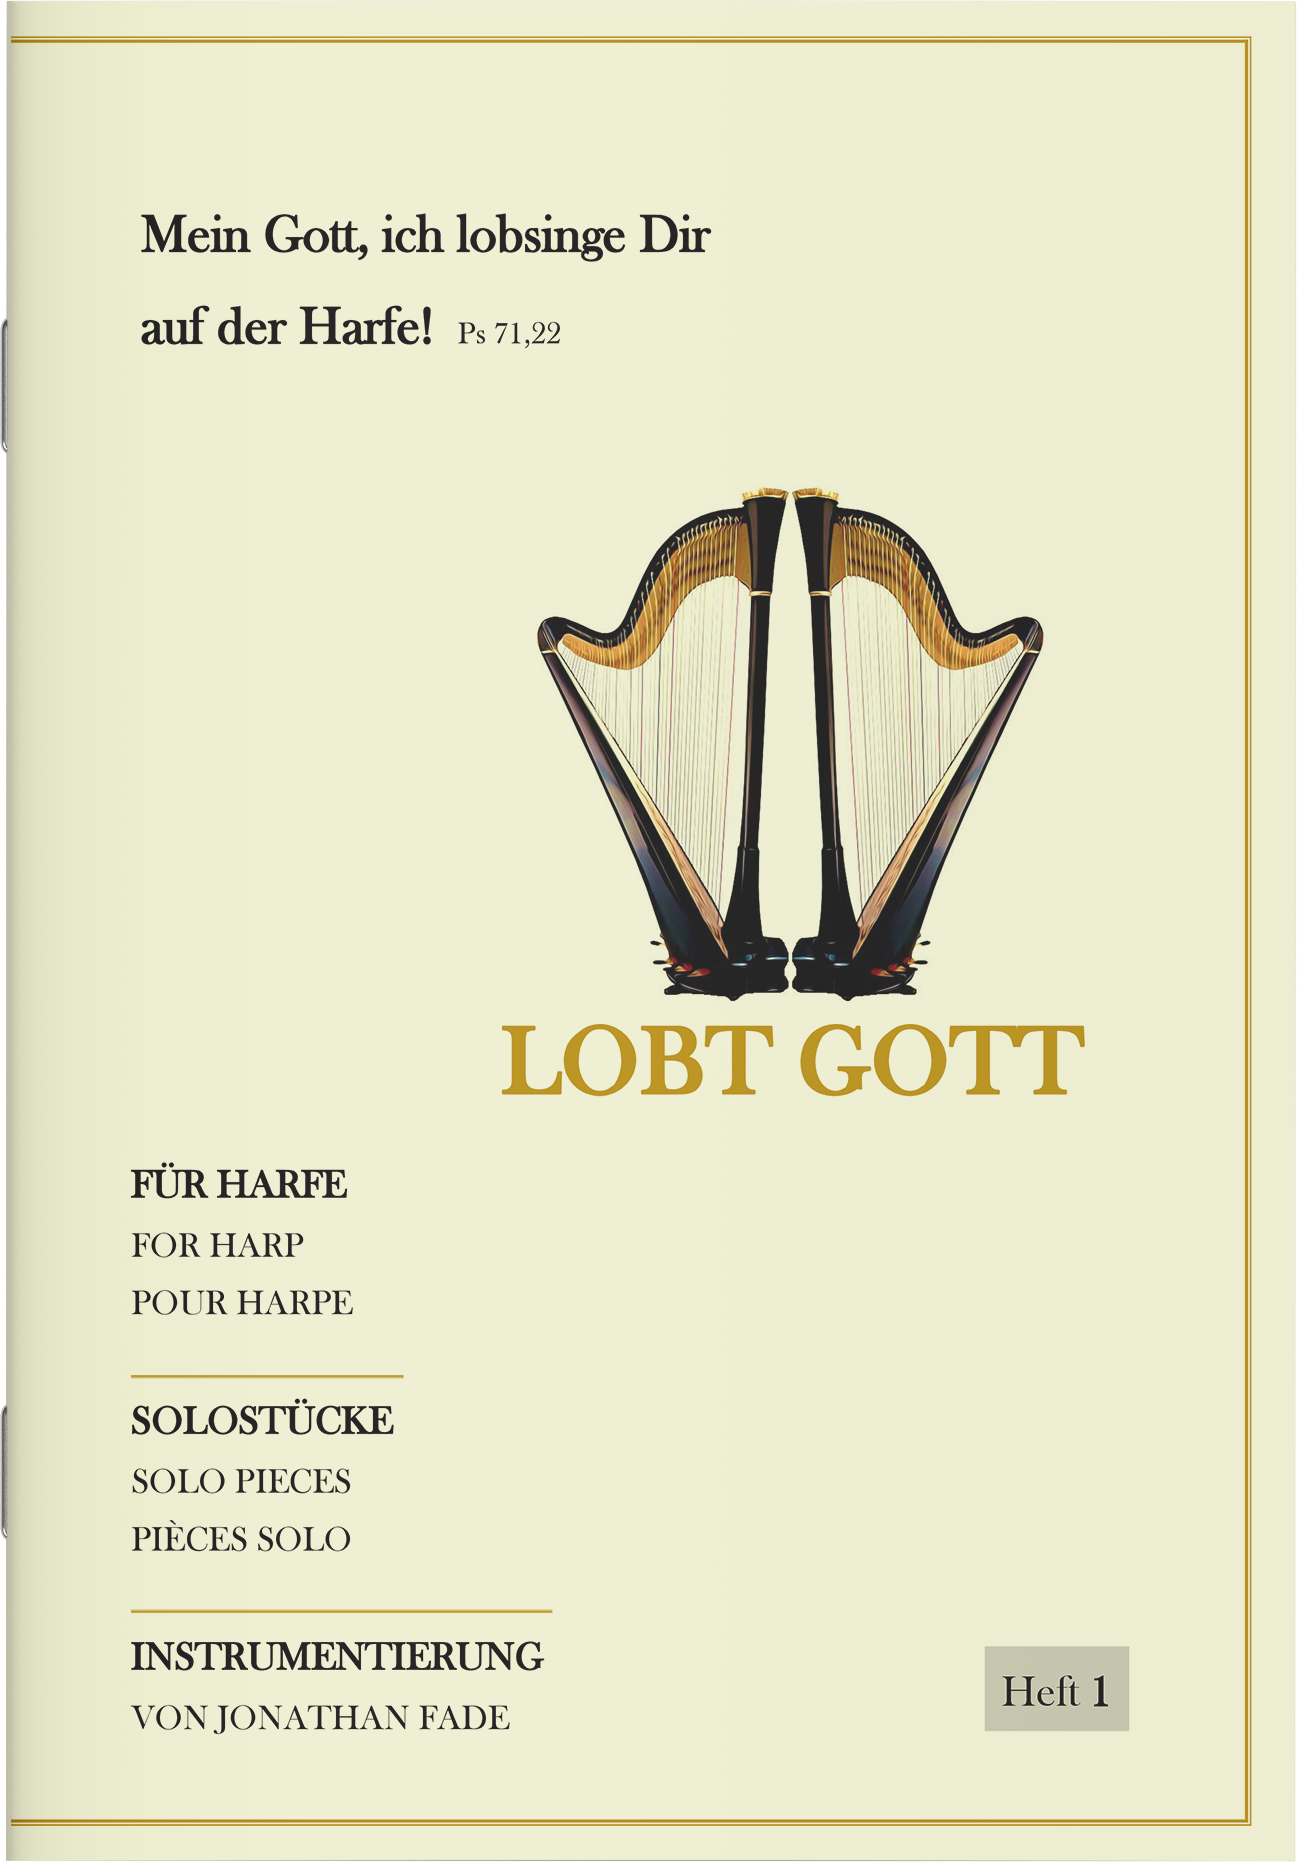 Harfenpartitur - Lobt Gott (Heft 1)